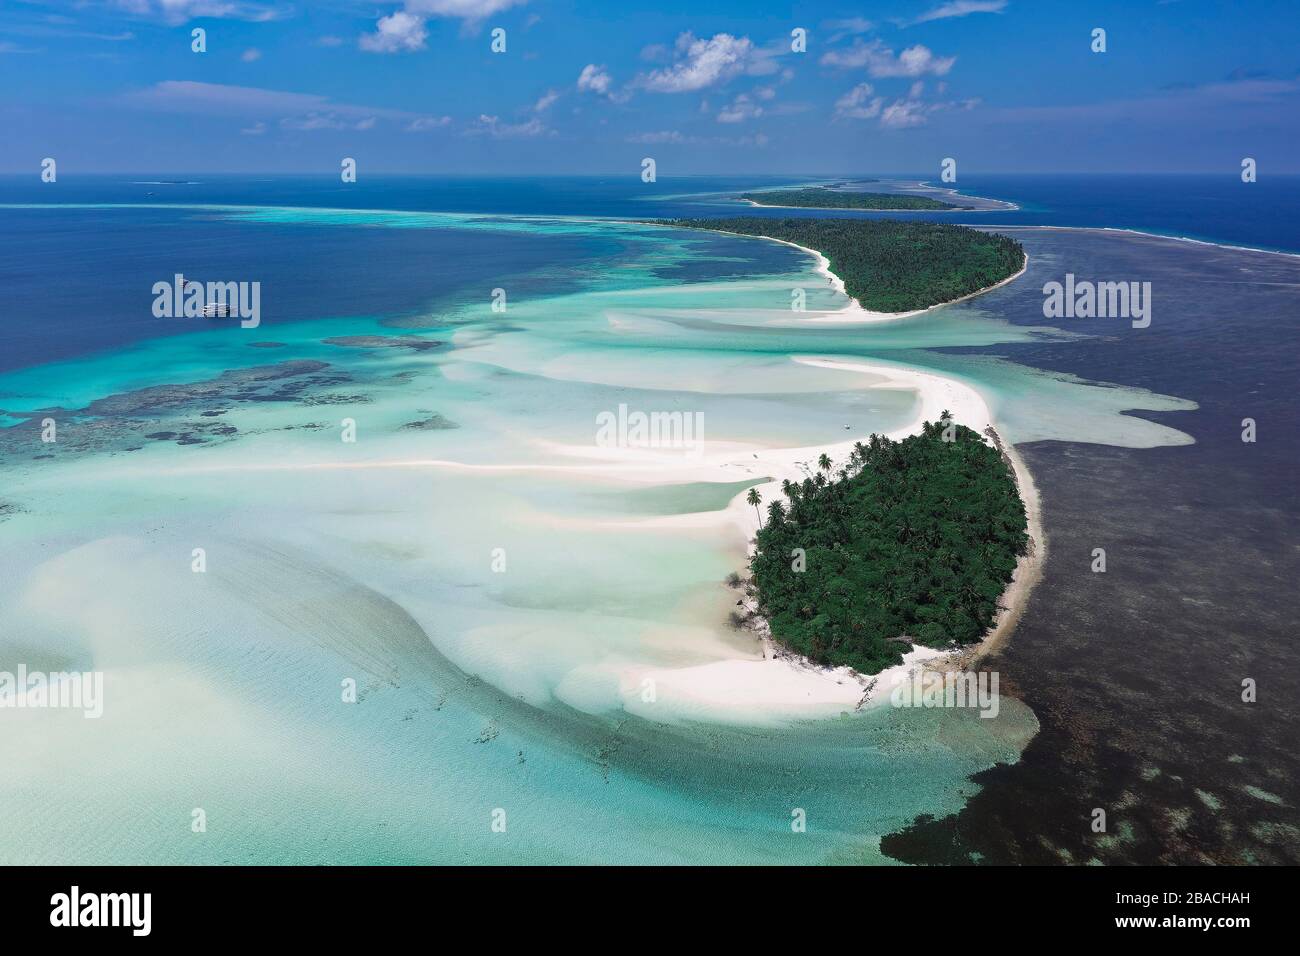 Catena disabitata di isole con un ampio sandbank sulla barriera corallina esterna orientale, sul prato di erba di destra, Atollo Ghaafu Dhalu, Oceano Indiano Foto Stock